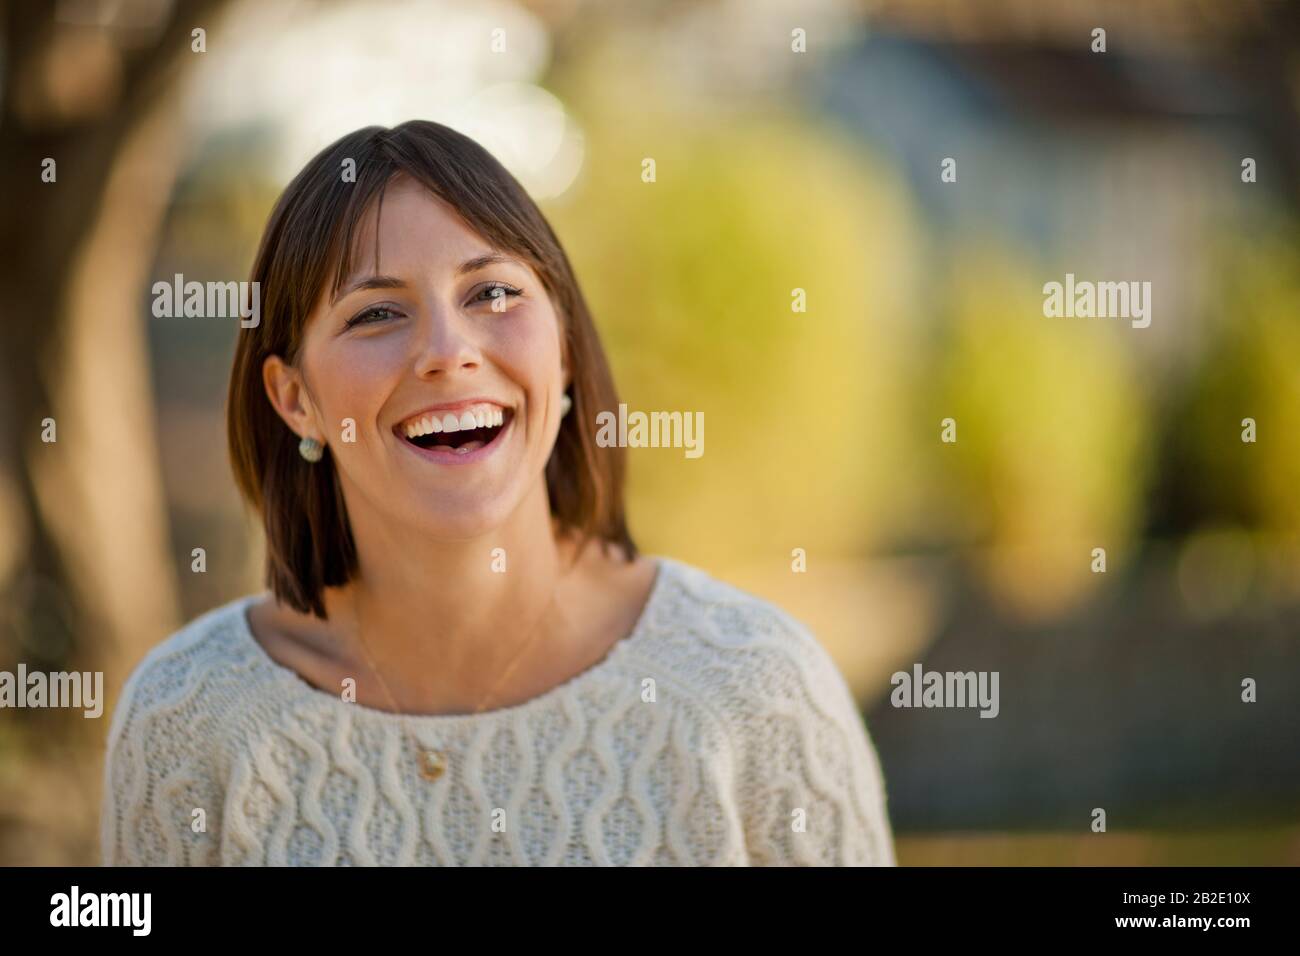 Retrato de una joven sonriente relajándose en un parque soleado Foto de stock